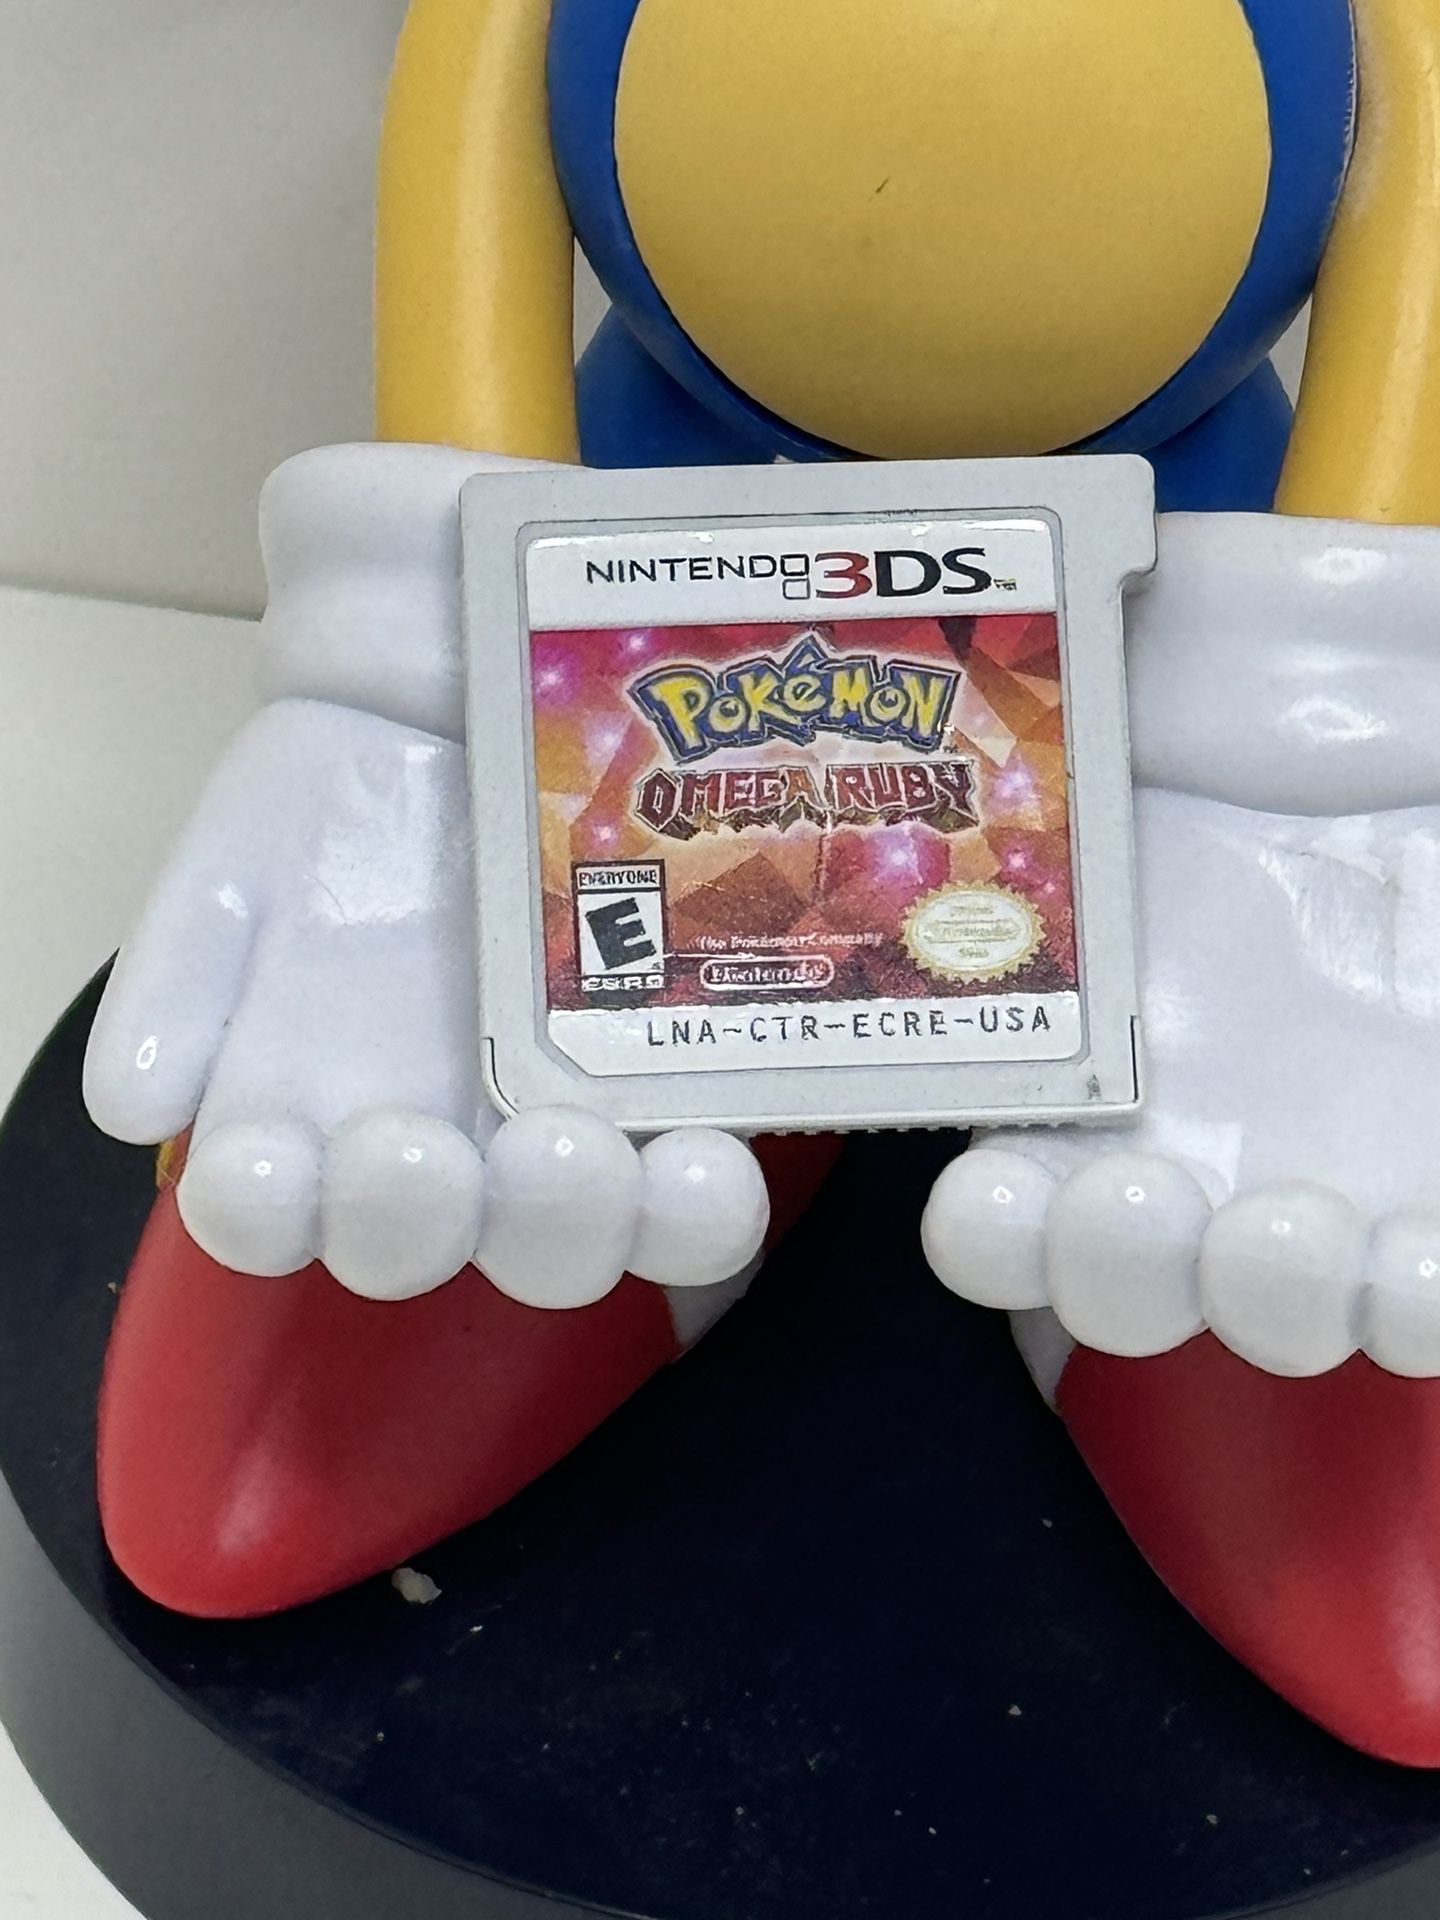 Pokémon Omega Ruby, Nintendo 3DS